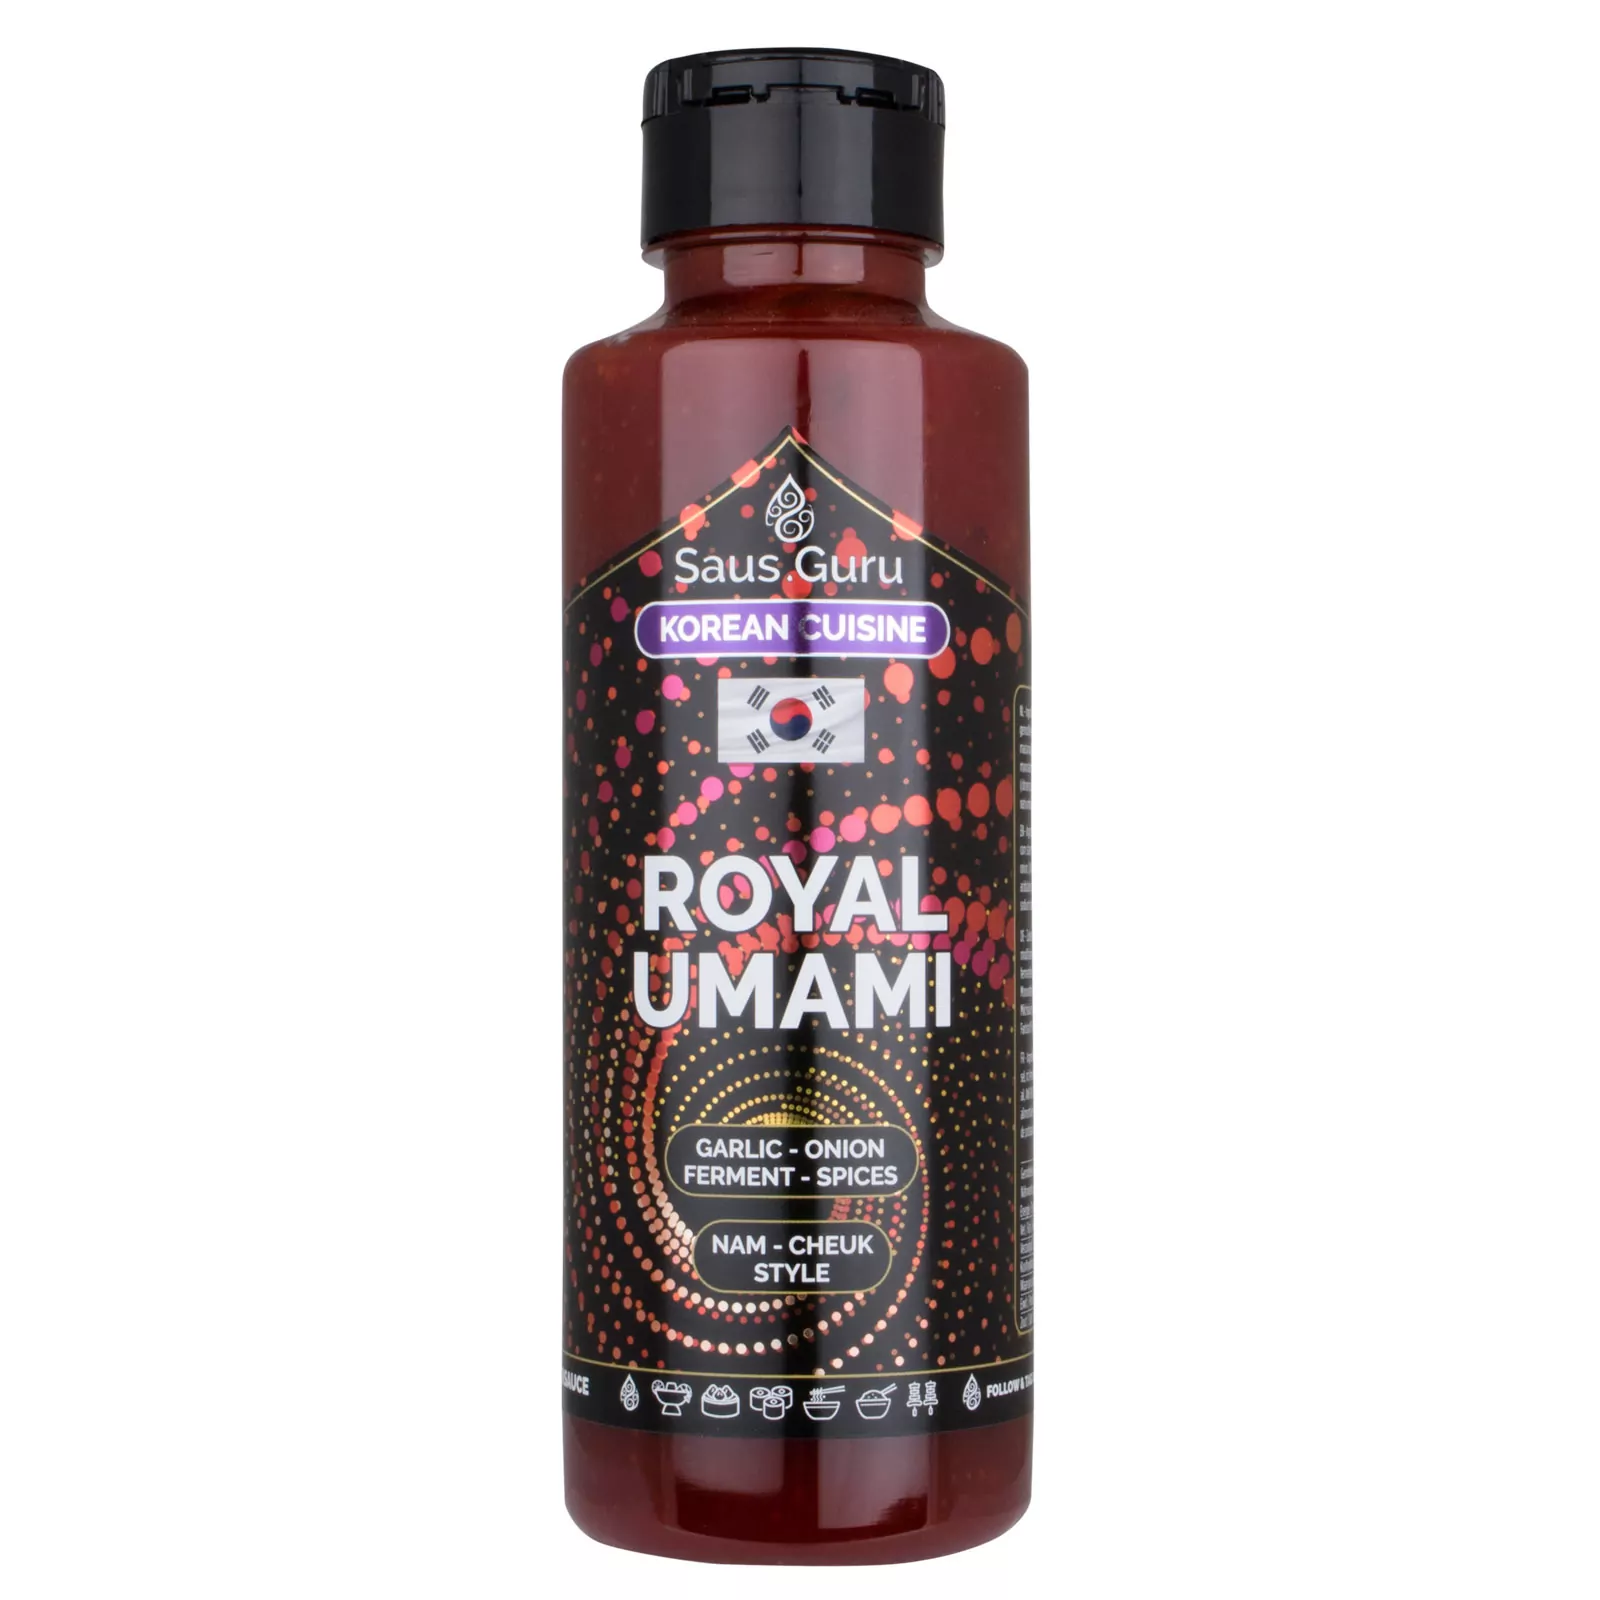 Saus.Guru Royal Umami - Asian Sauce 0,5L